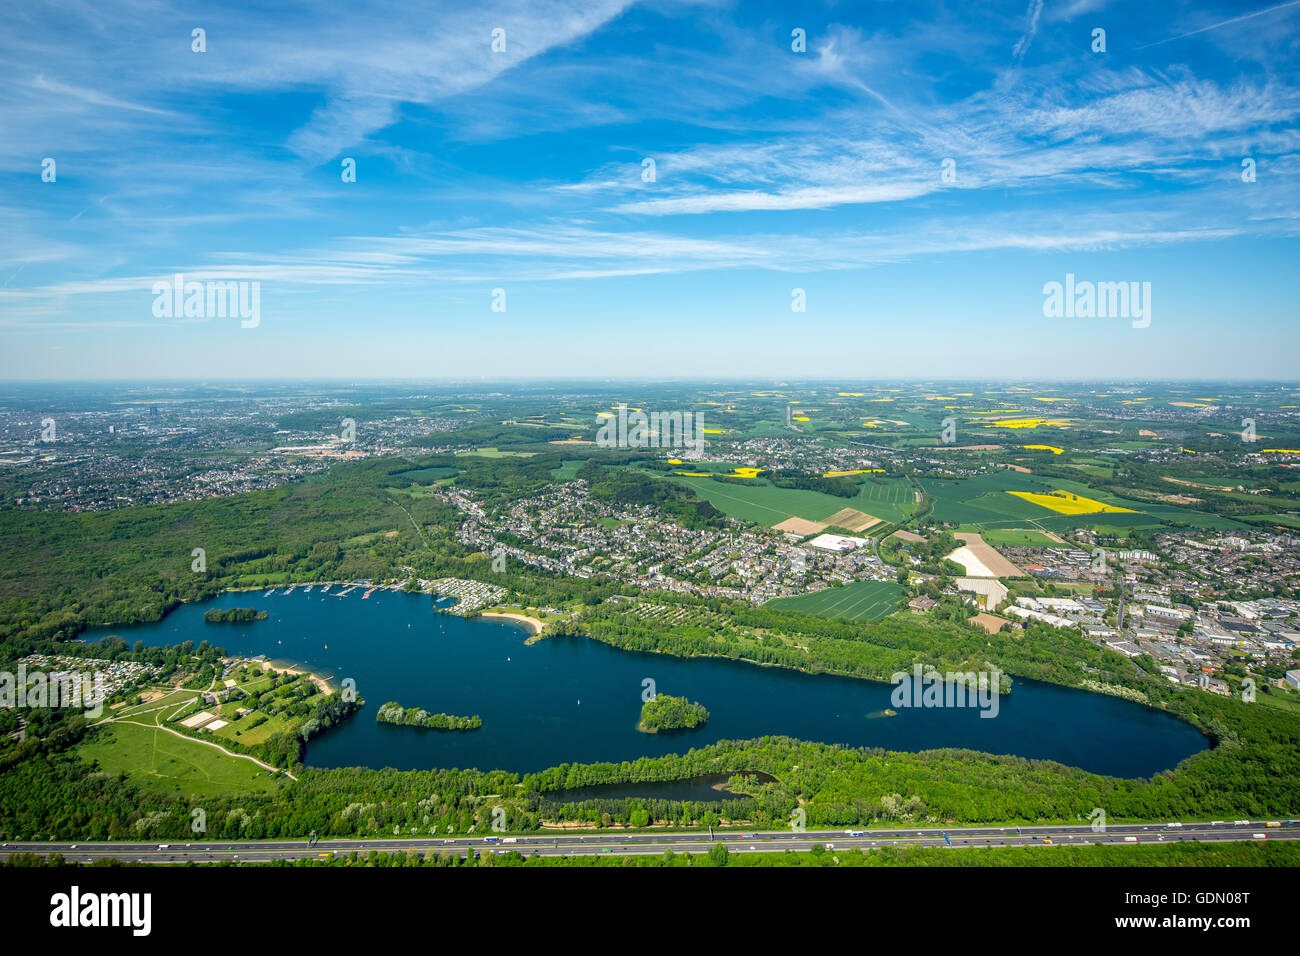 Vista aérea, descripción Unterbacher Ver, zona de recreo Unterbacher Ver, Düsseldorf, Niederrhein, Renania del Norte-Westfalia Foto de stock